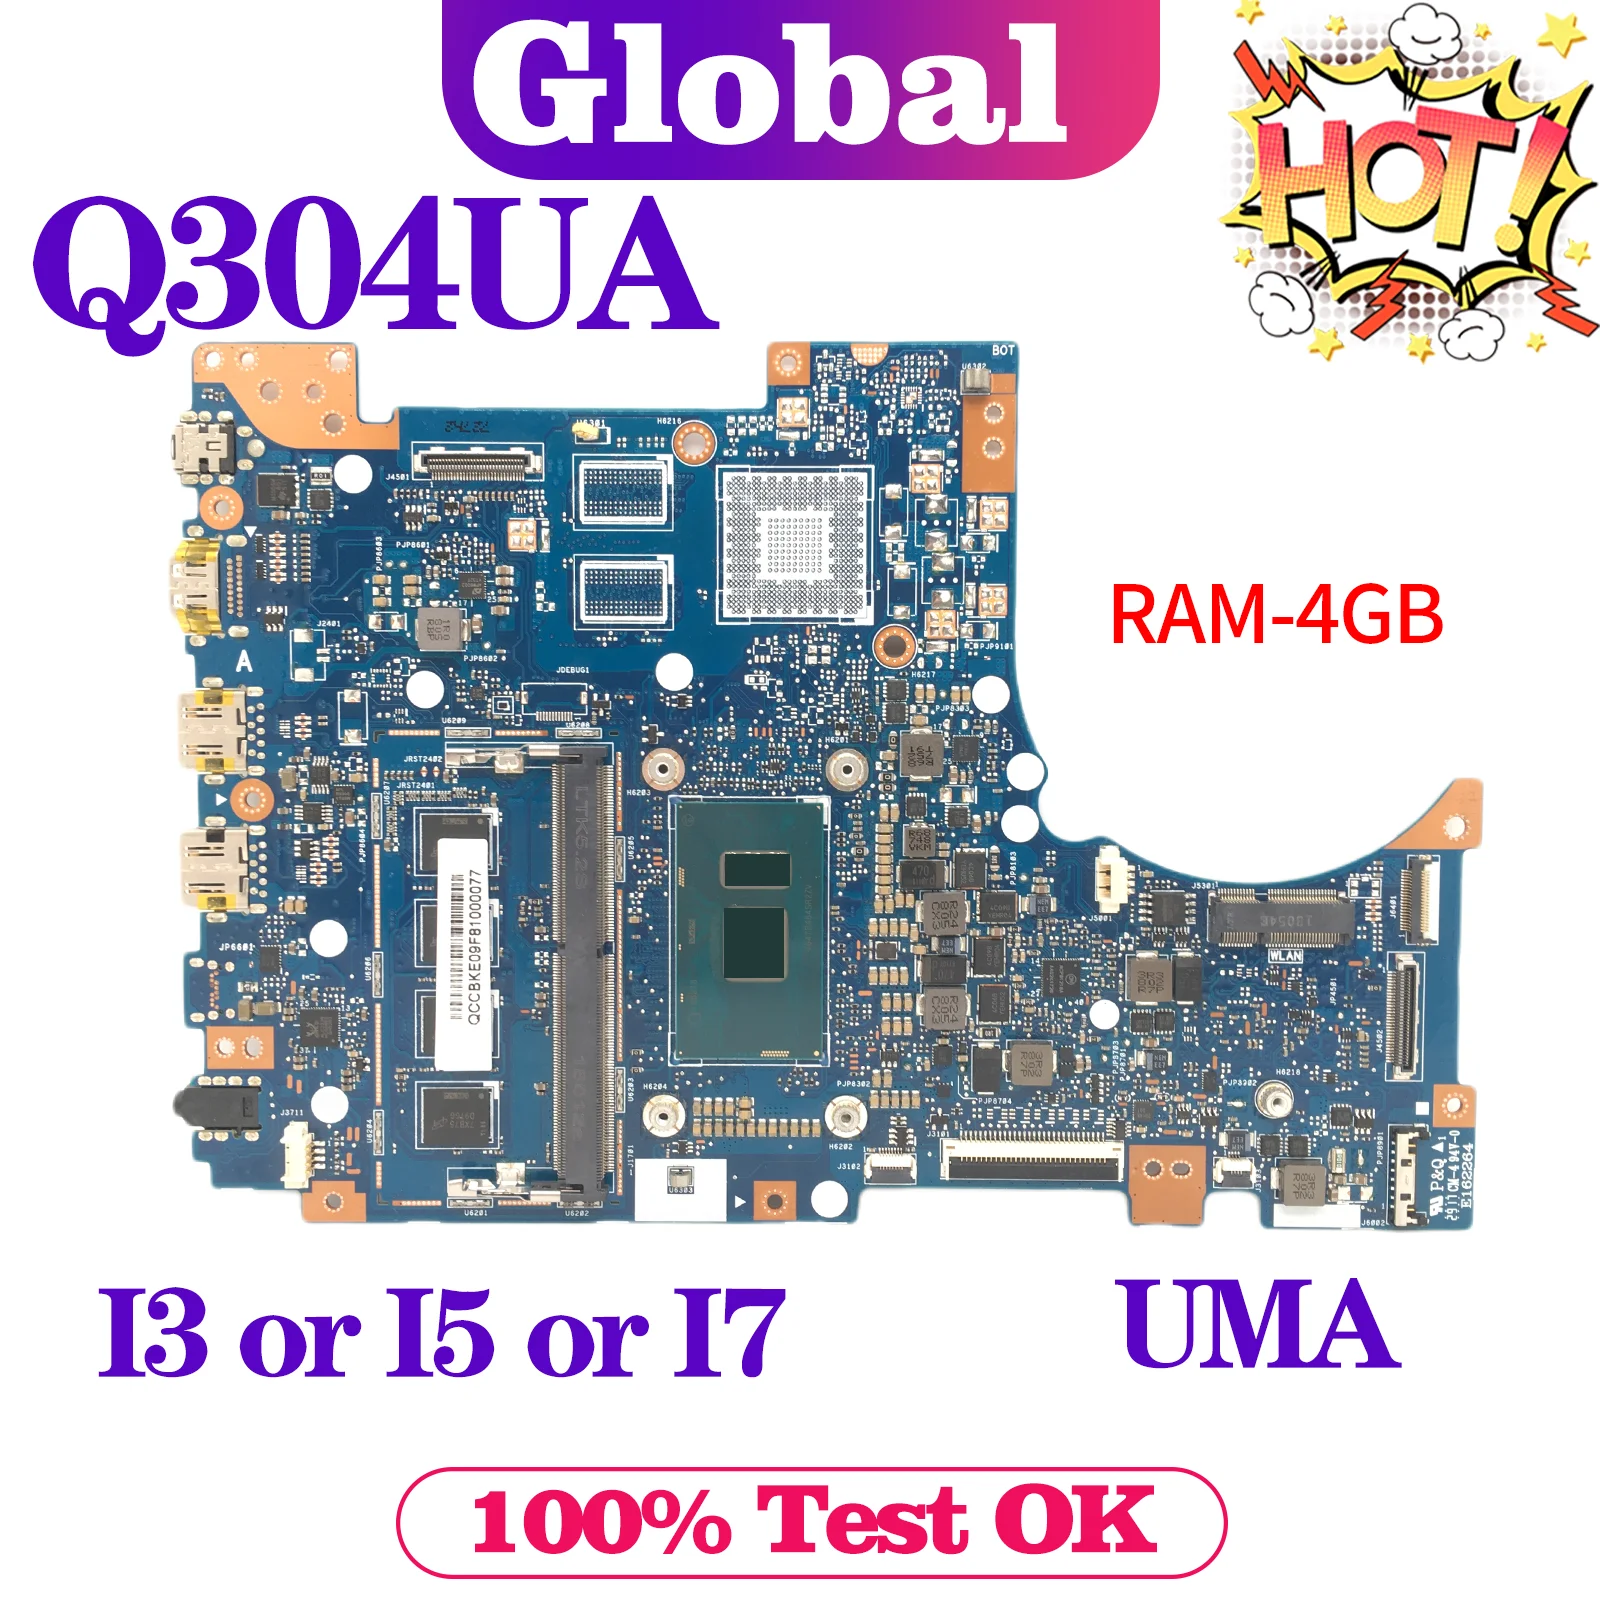   KEFU Q304U   ASUS Q304UA Q304UAK   I3 I5 I7 6th/7th Gen 4GB/RAM UMA,  